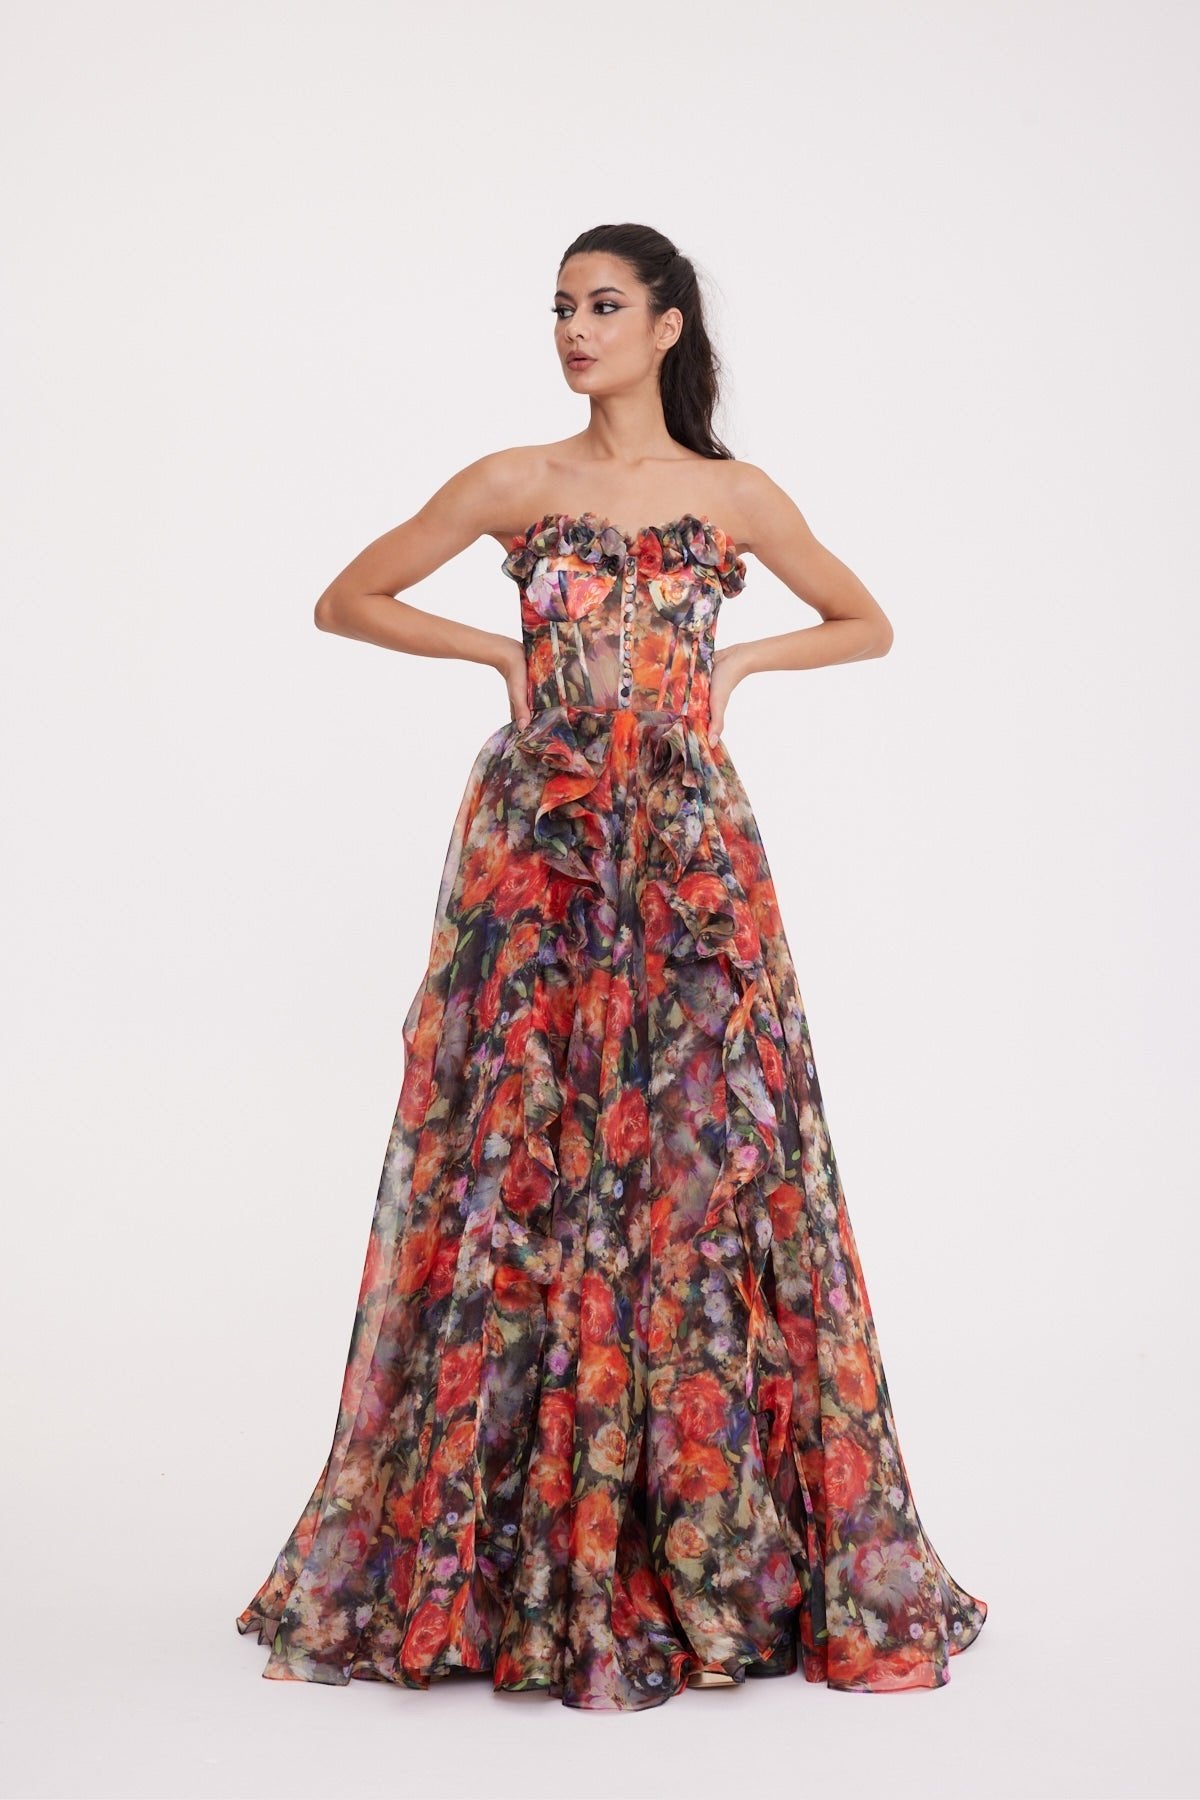 Marigold Strapless Slit Patterned Dress 